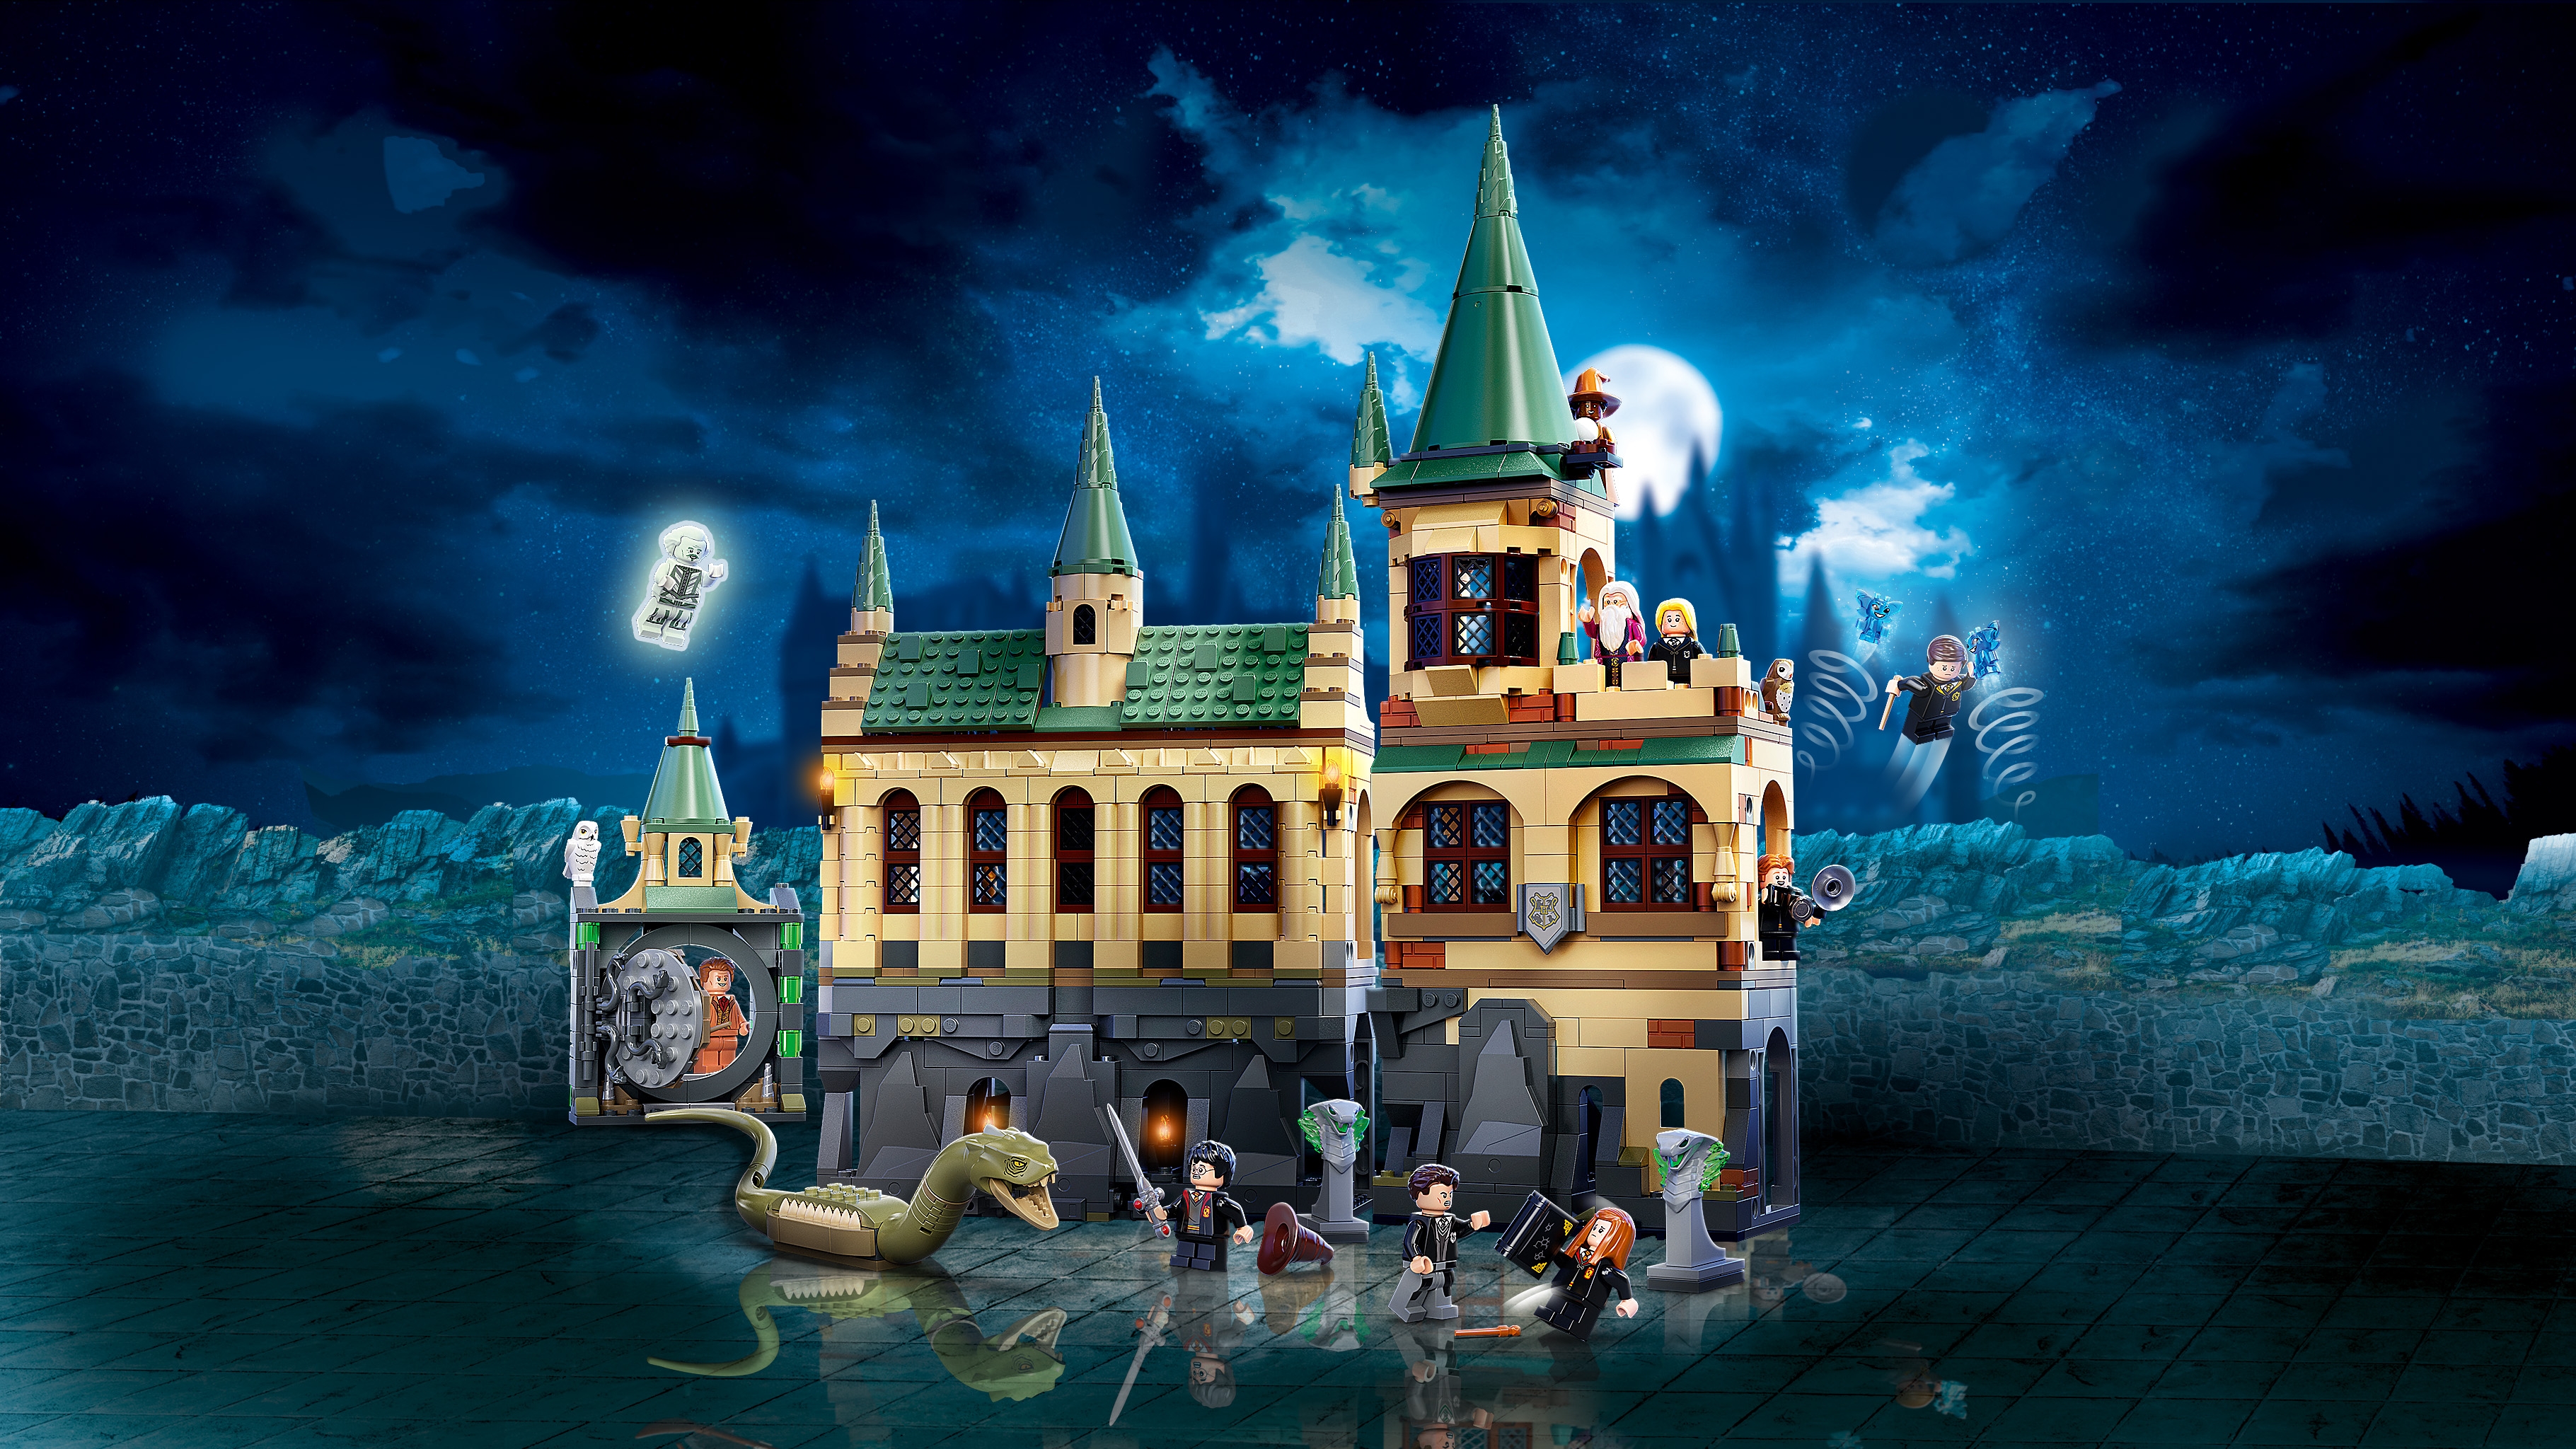 LEGO Harry Potter 76389 La Chambre des Secrets de Poudlard